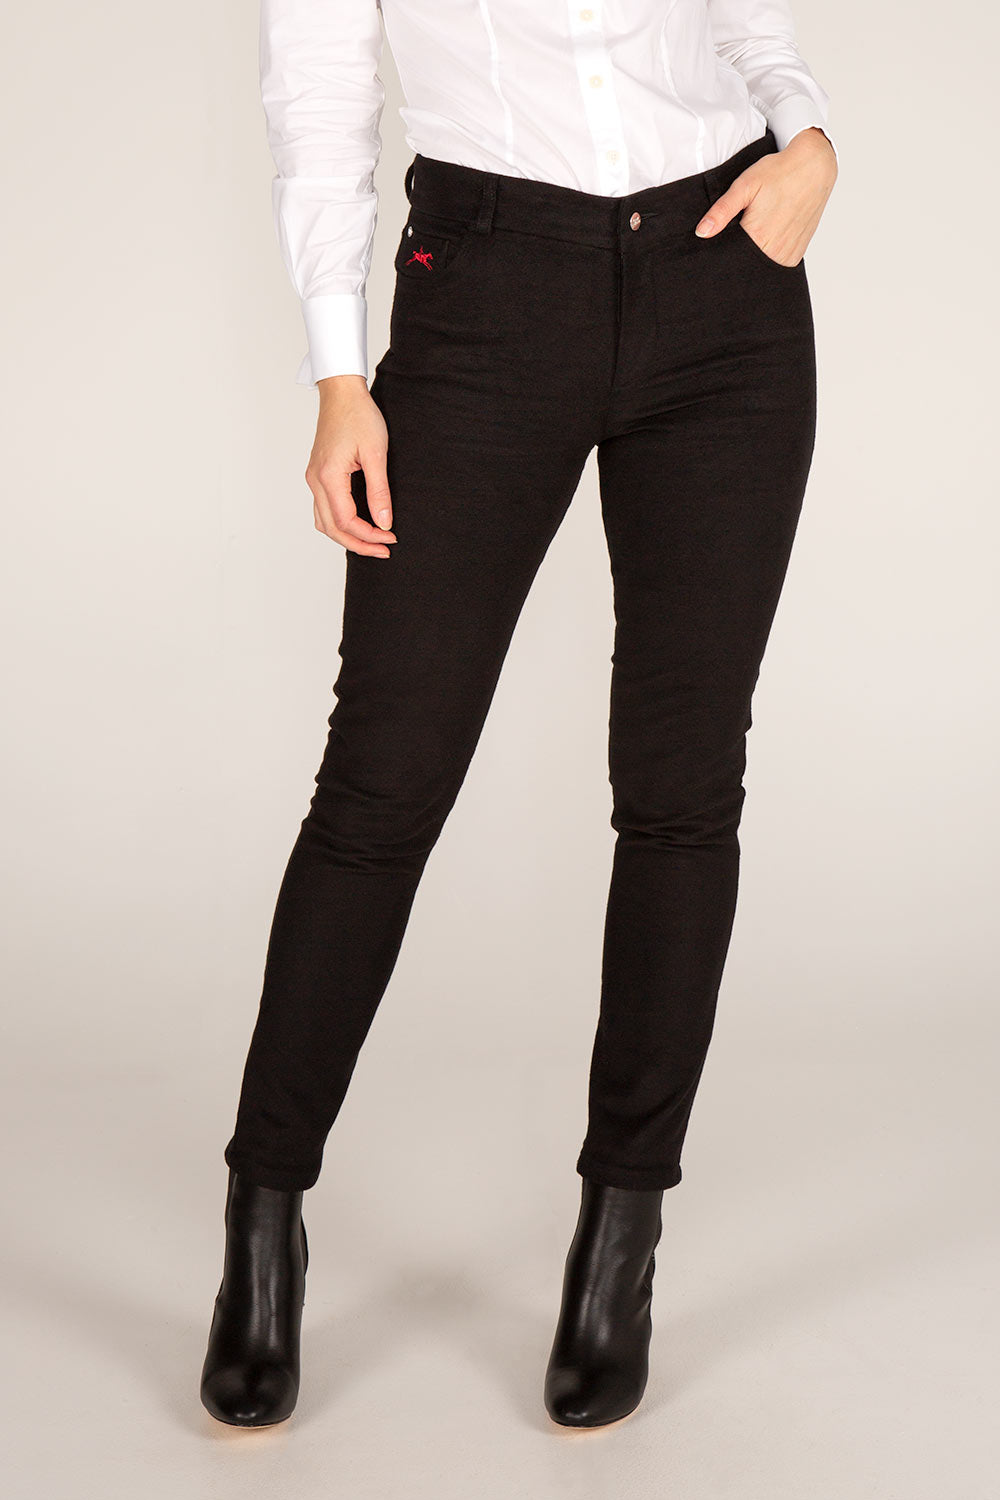 Irene - Women's Slim Fit Moleskin Jeans